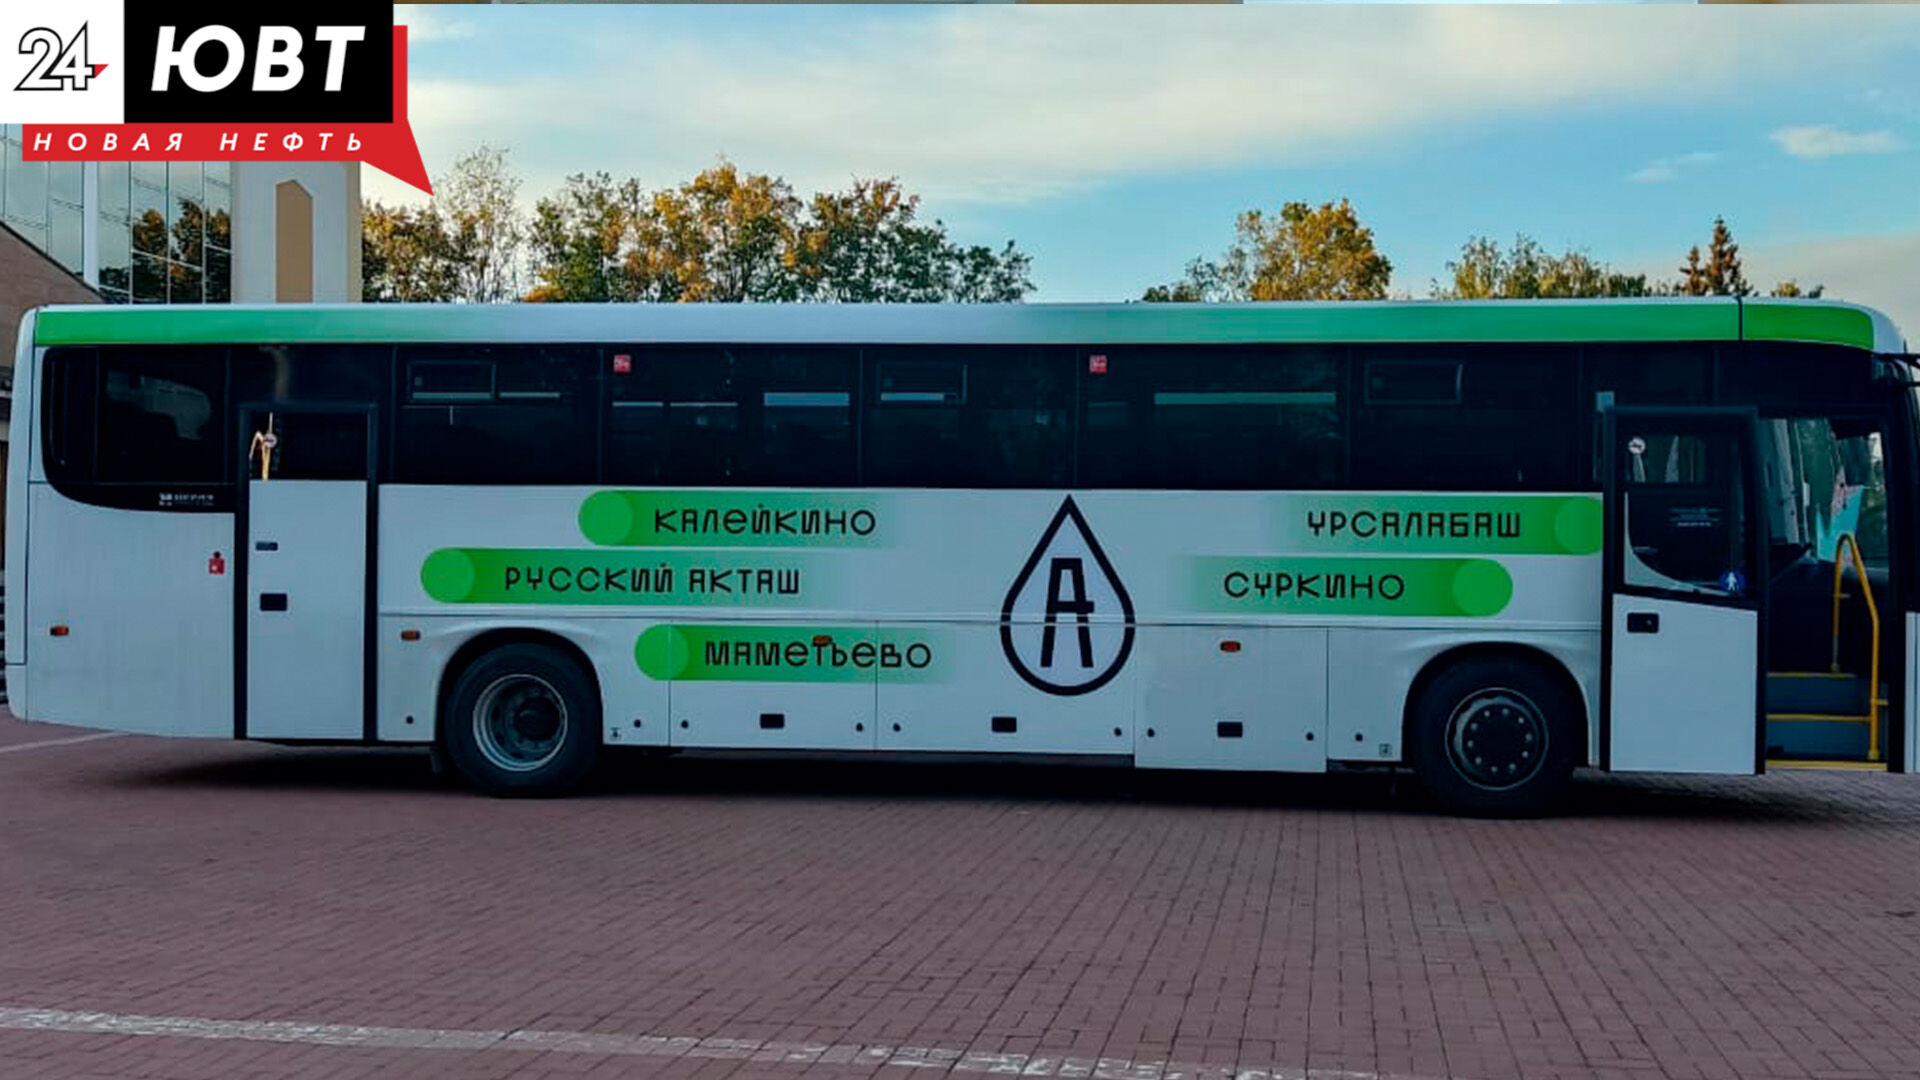 Альметьевский район получит 9 новых больших автобусов